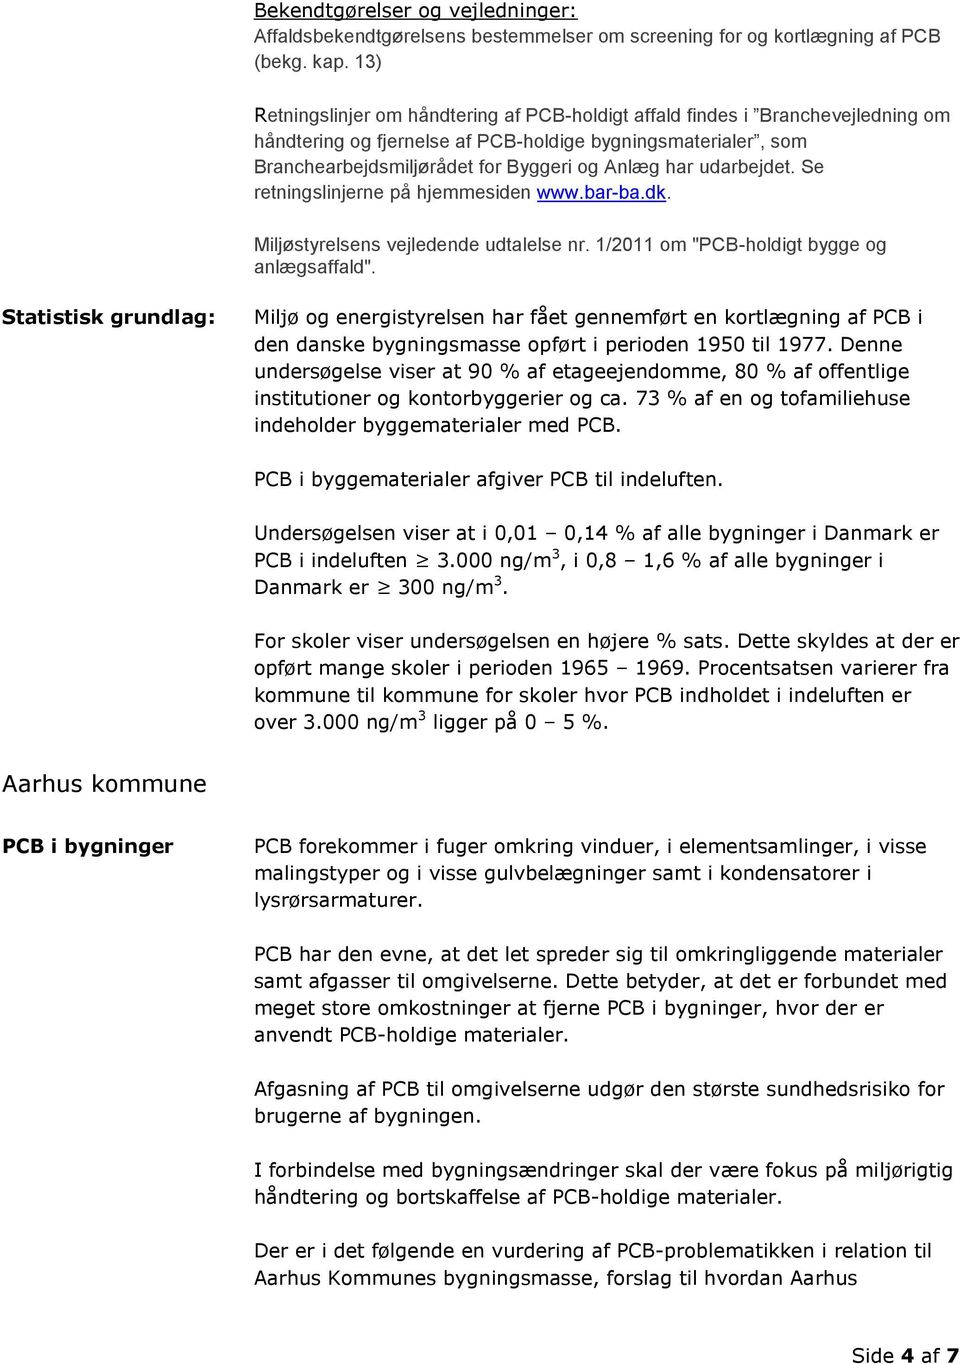 udarbejdet. Se retningslinjerne på hjemmesiden www.bar-ba.dk. Miljøstyrelsens vejledende udtalelse nr. 1/2011 om "PCB-holdigt bygge og anlægsaffald".